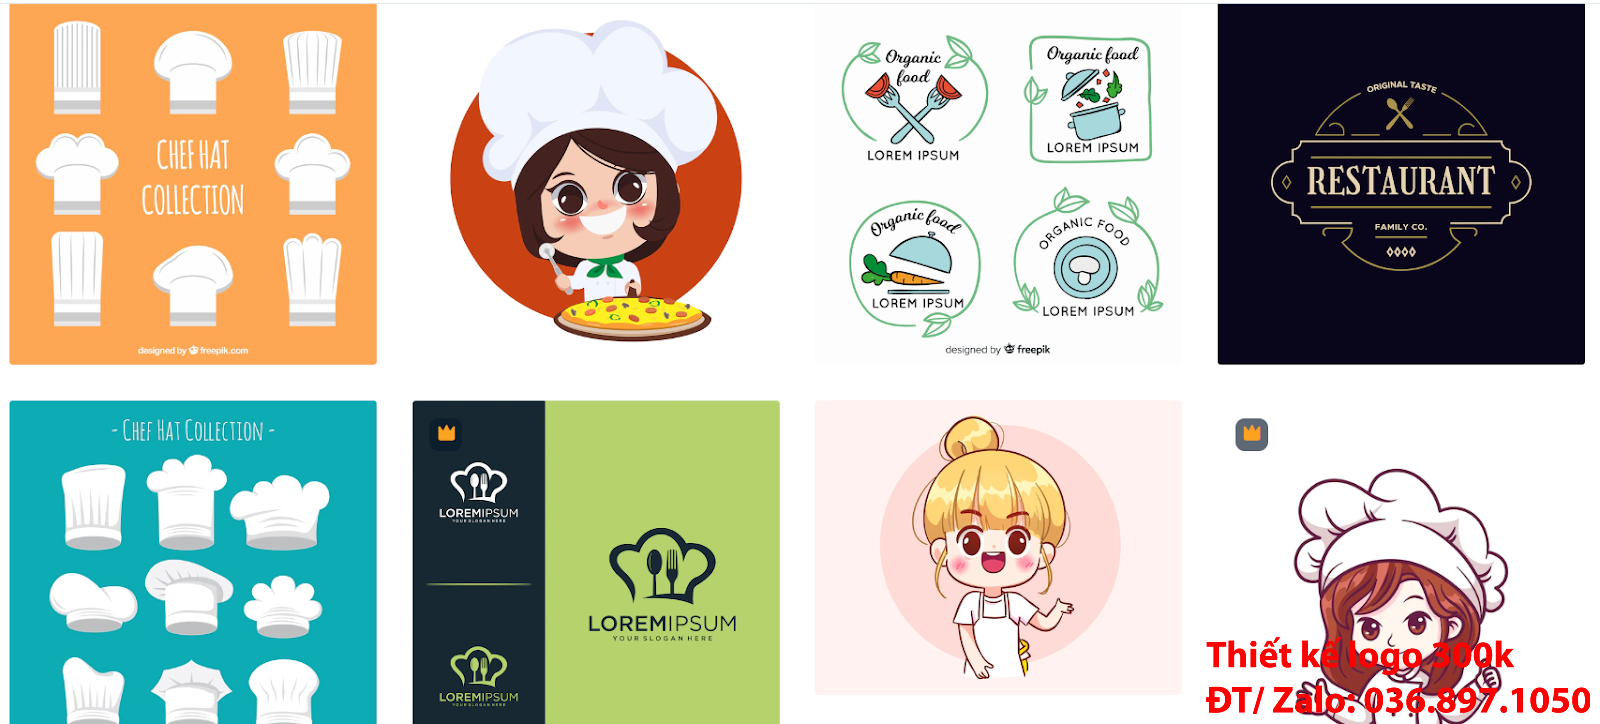 Công ty nhận thiết kế các Mẫu logo đẹp đầu bếp chef cook sáng tạo chuyên nghiệp giá rẻ tại Hà Nội